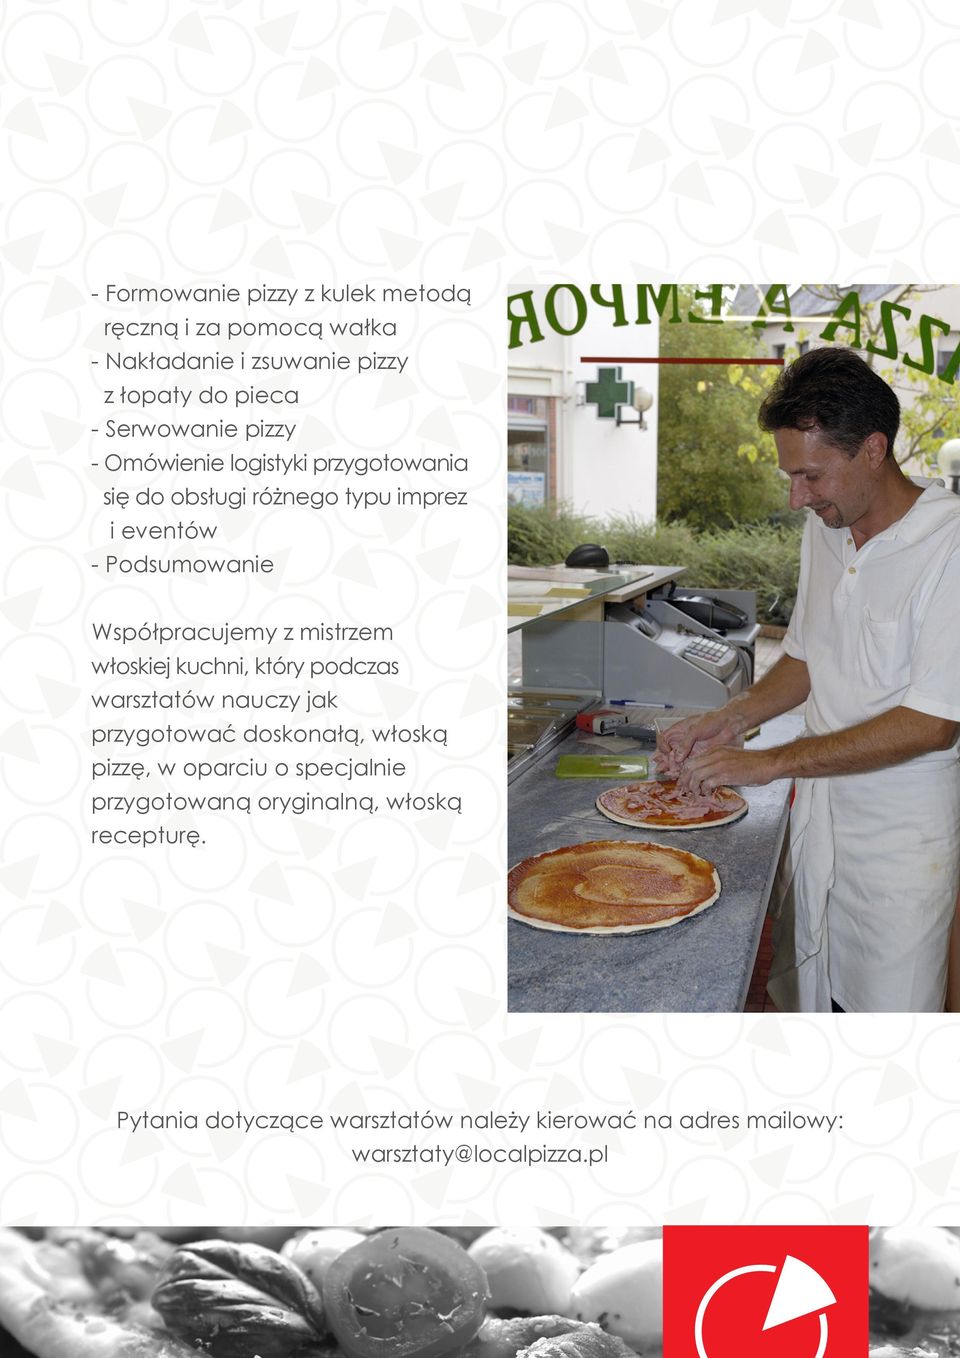 mistrzem włoskiej kuchni, który podczas warsztatów nauczy jak przygotować doskonałą, włoską pizzę, w oparciu o specjalnie